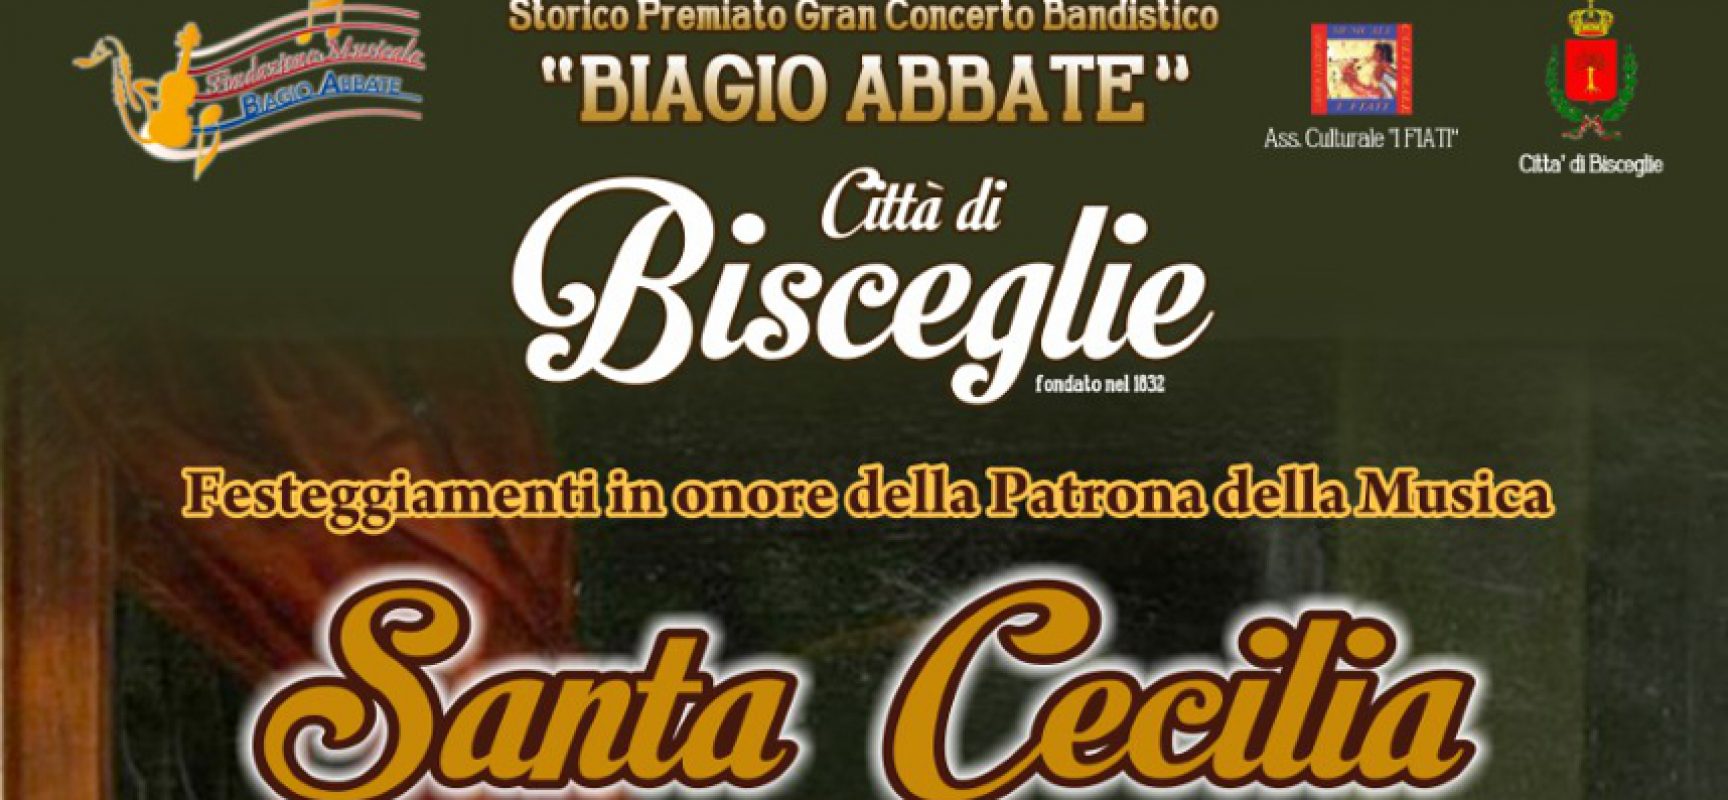 Il Concerto Bandistico Città di Bisceglie organizza un evento per celebrare Santa Cecilia